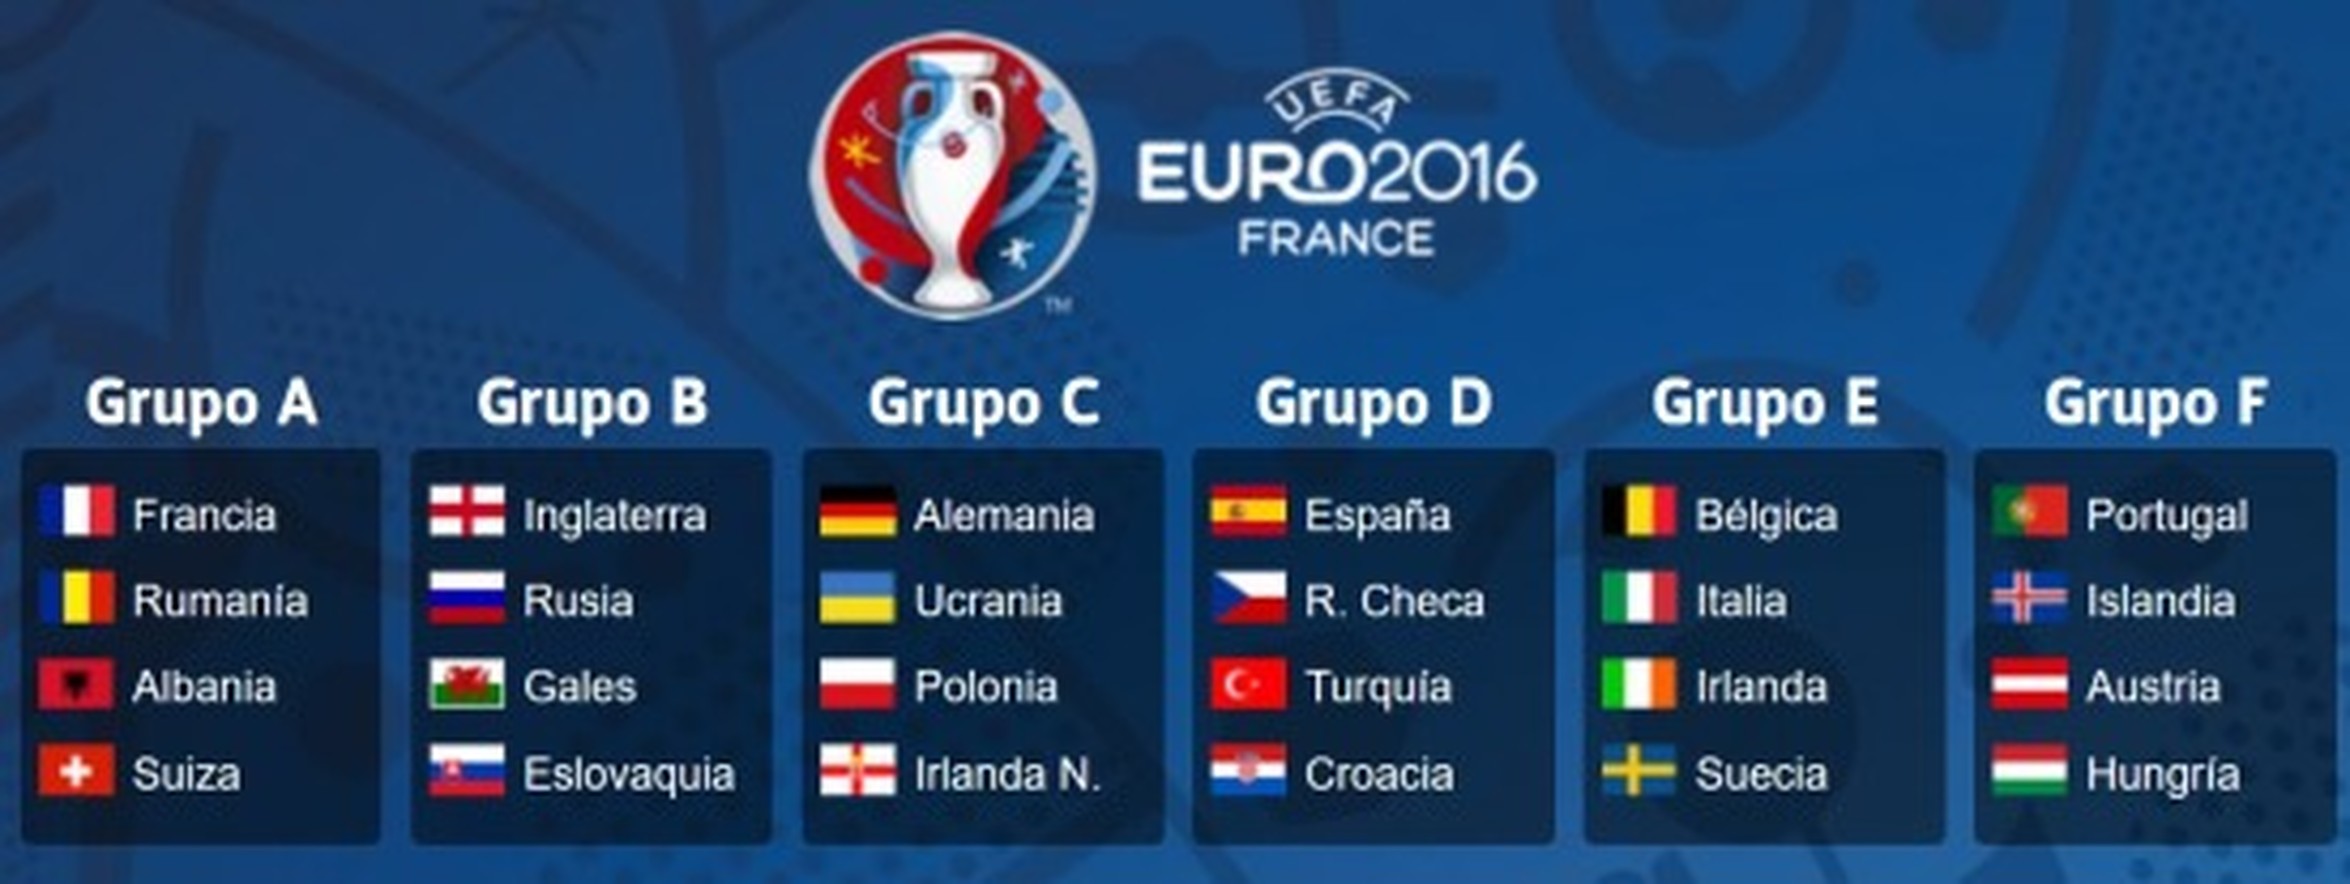 [ MEMEDEPORTES ] Los grupos de la Eurocopa 2016